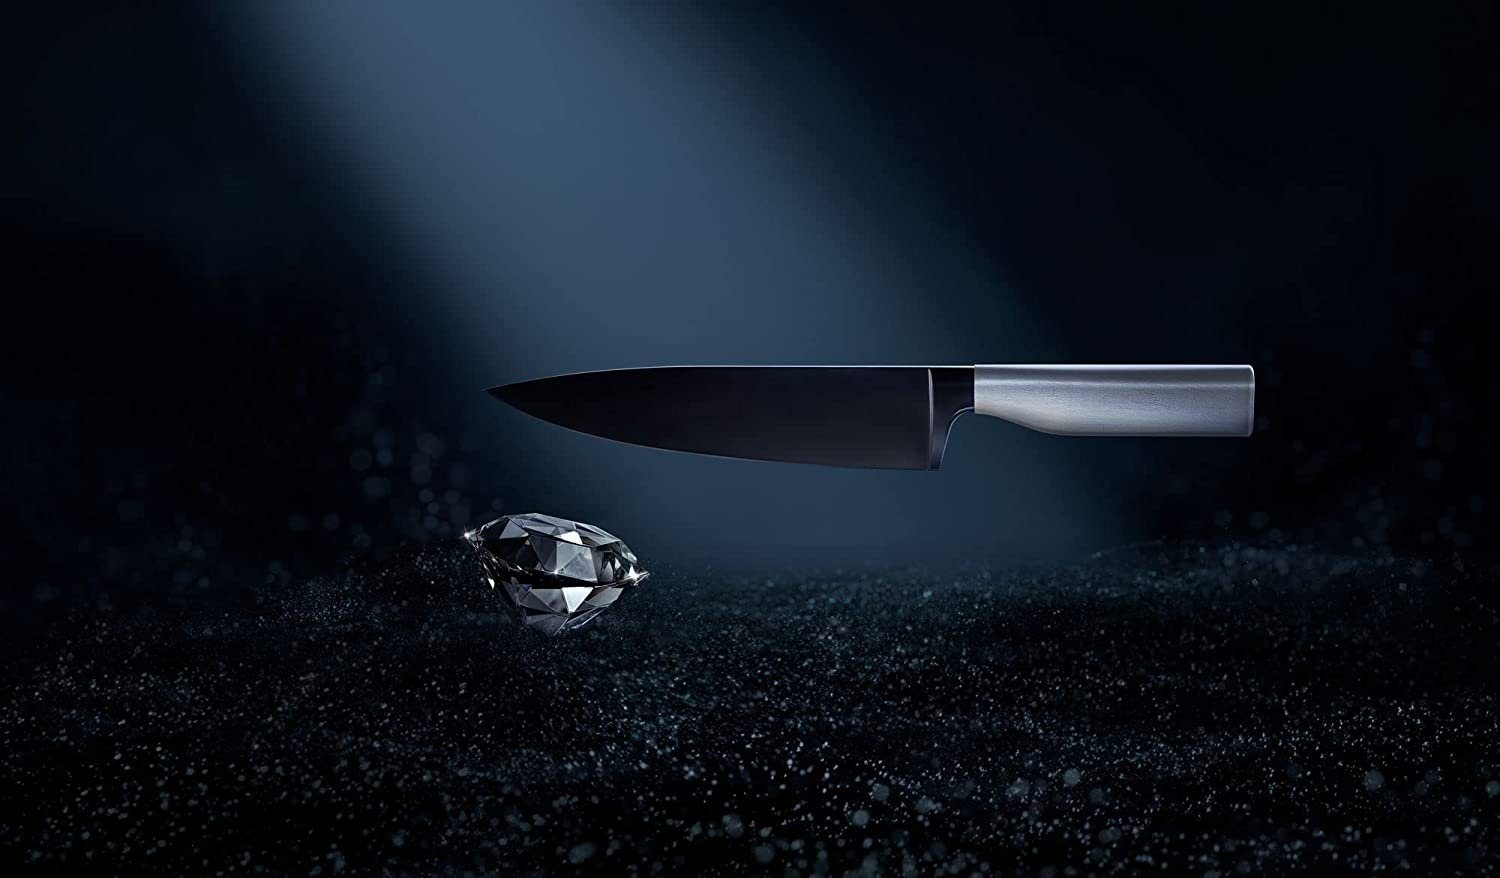 sicherer Black, Fleischmesser Klinge (34cm), 20cm, Cut, Diamond Ultimate WMF Fingerschutz Fleischmesser